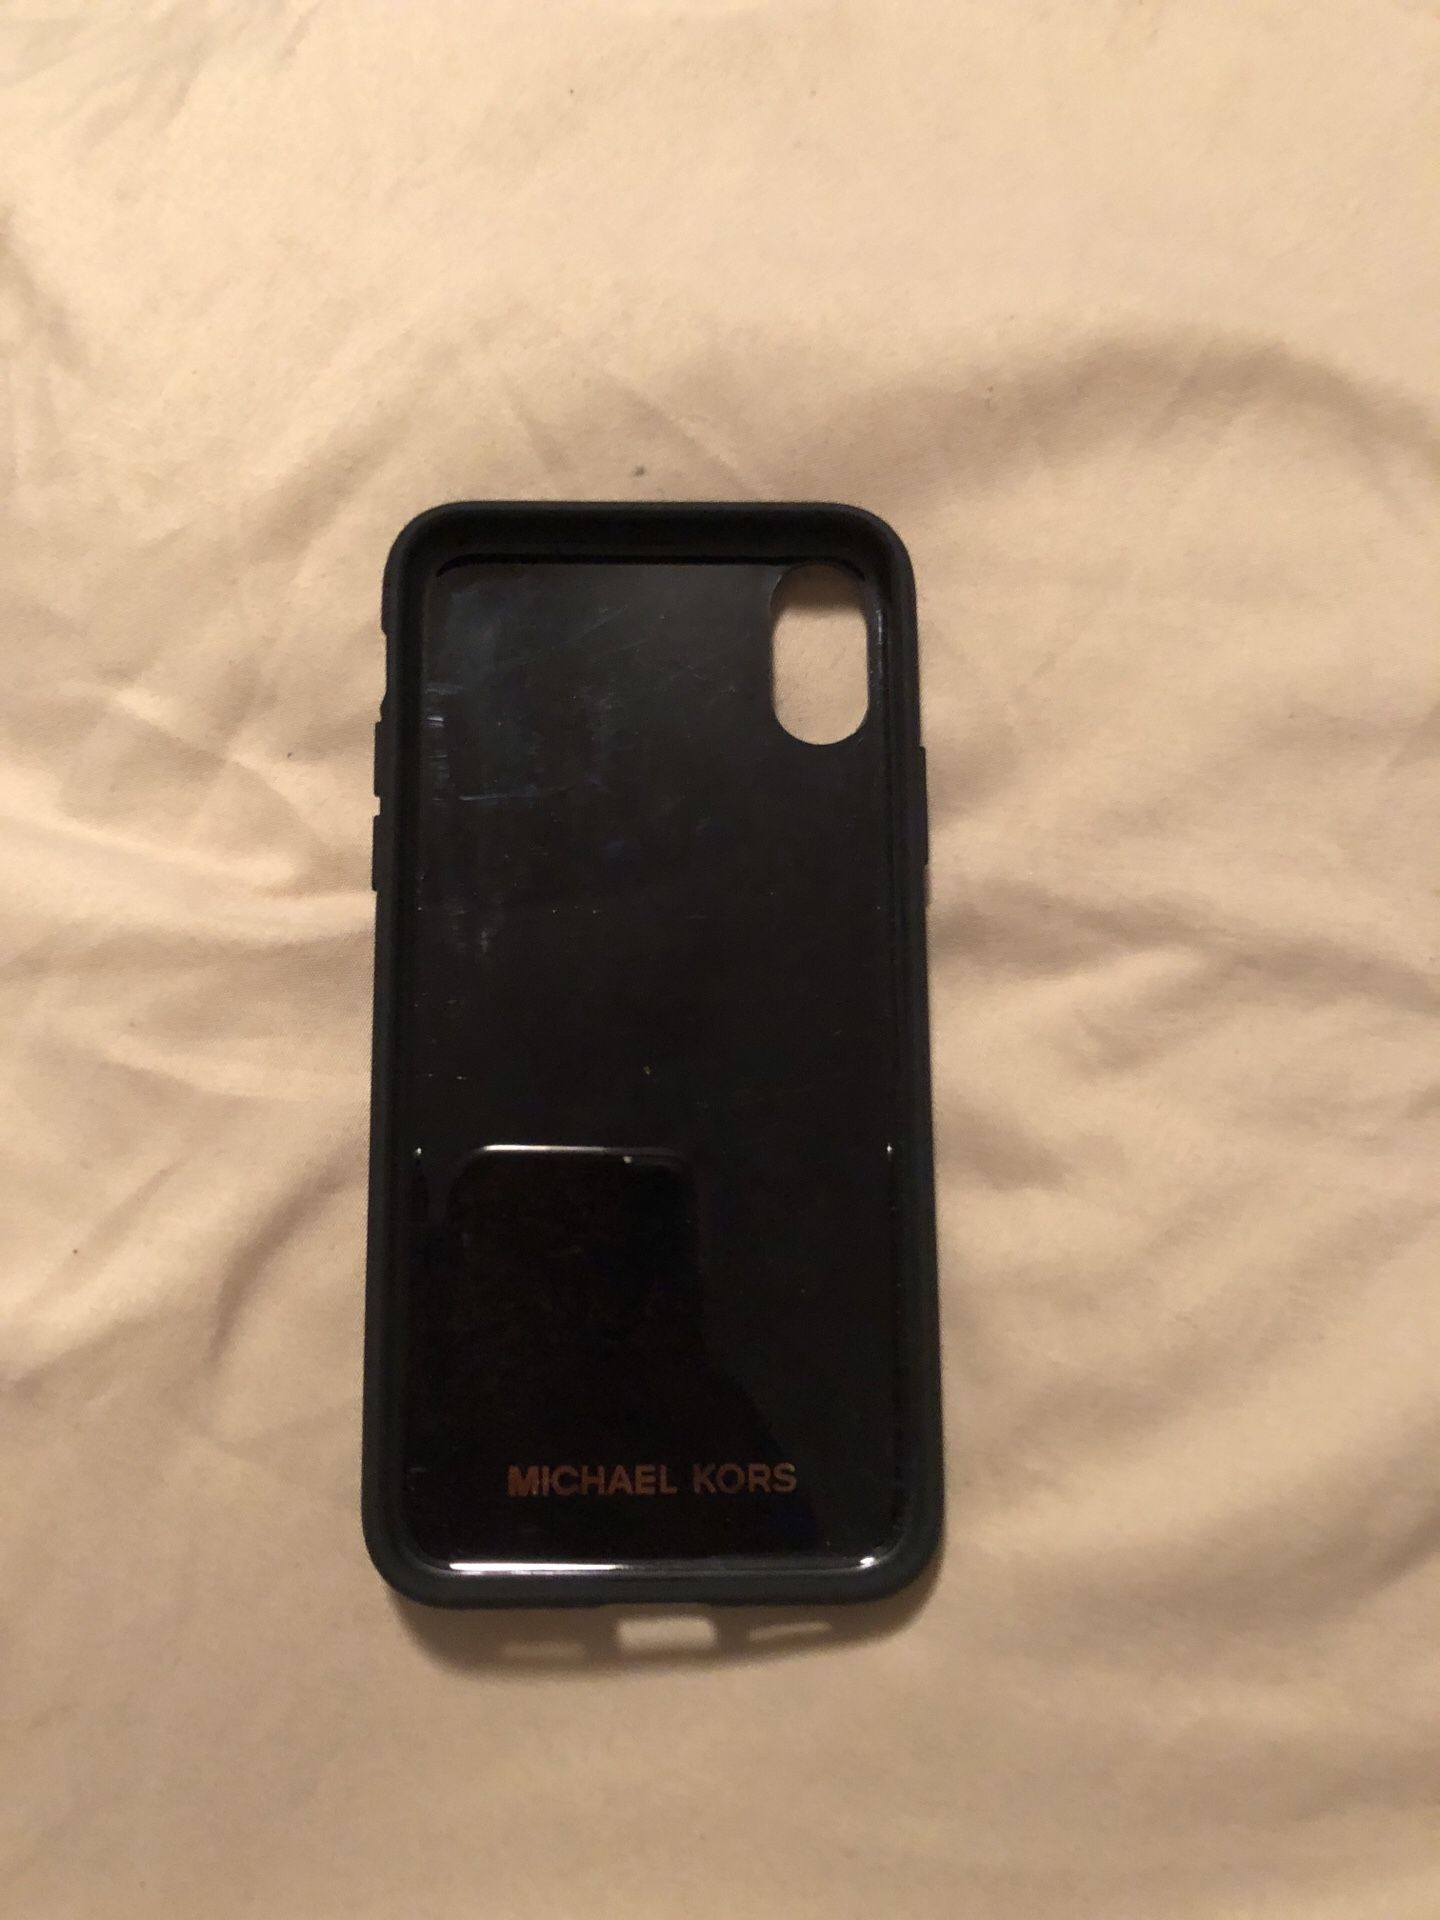 verbrand Het is goedkoop Bully iPhone X case Michael kors for Sale in Hampton, VA - OfferUp